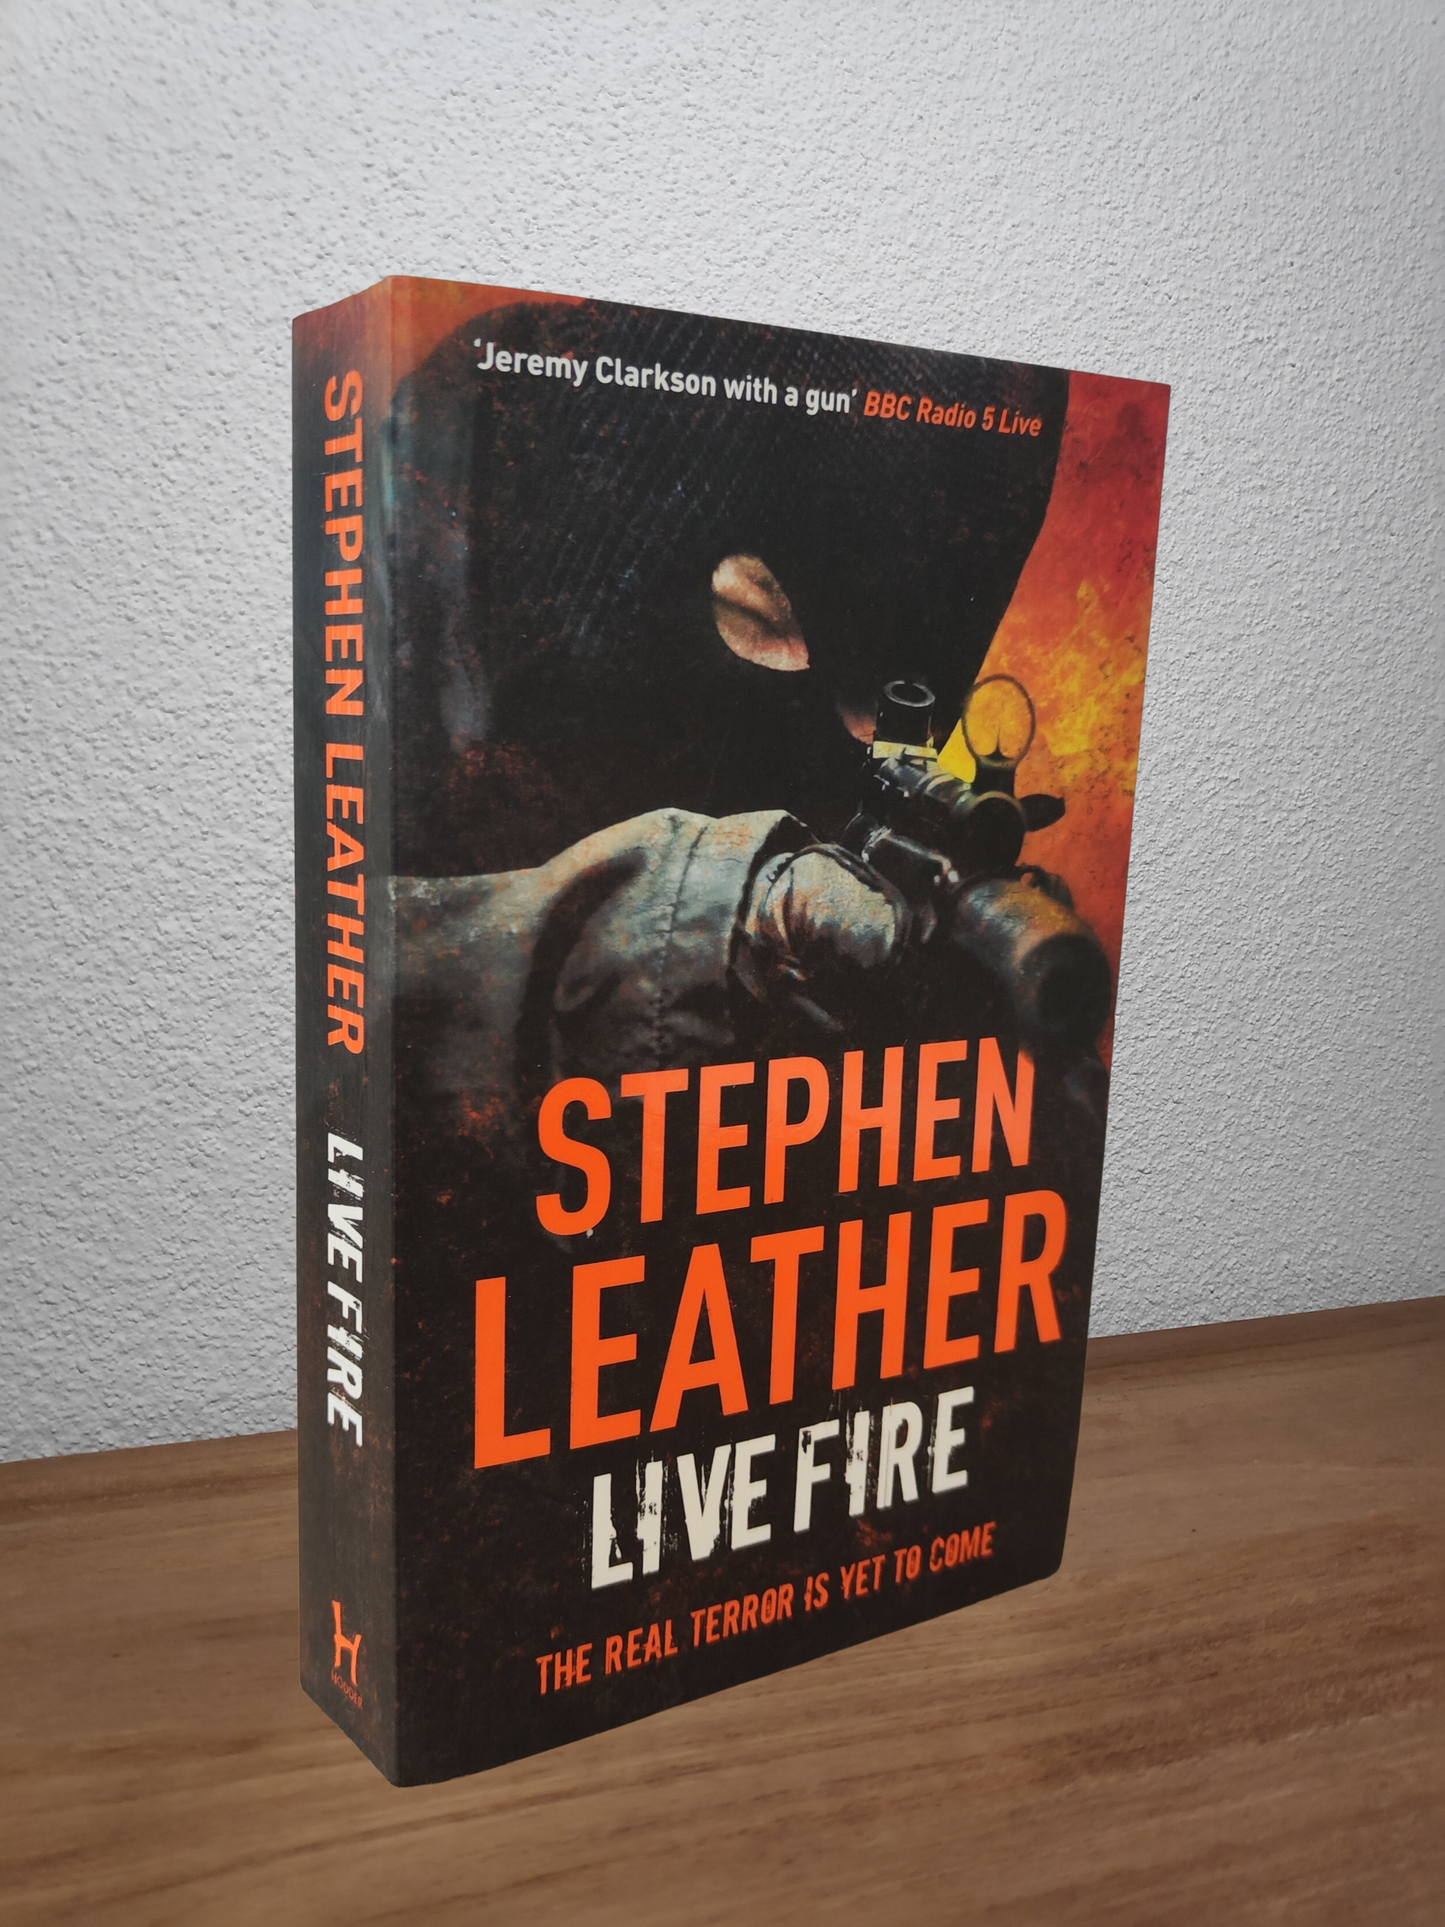 Stephen Leather - Live Fire (Dan Shepherd #6)